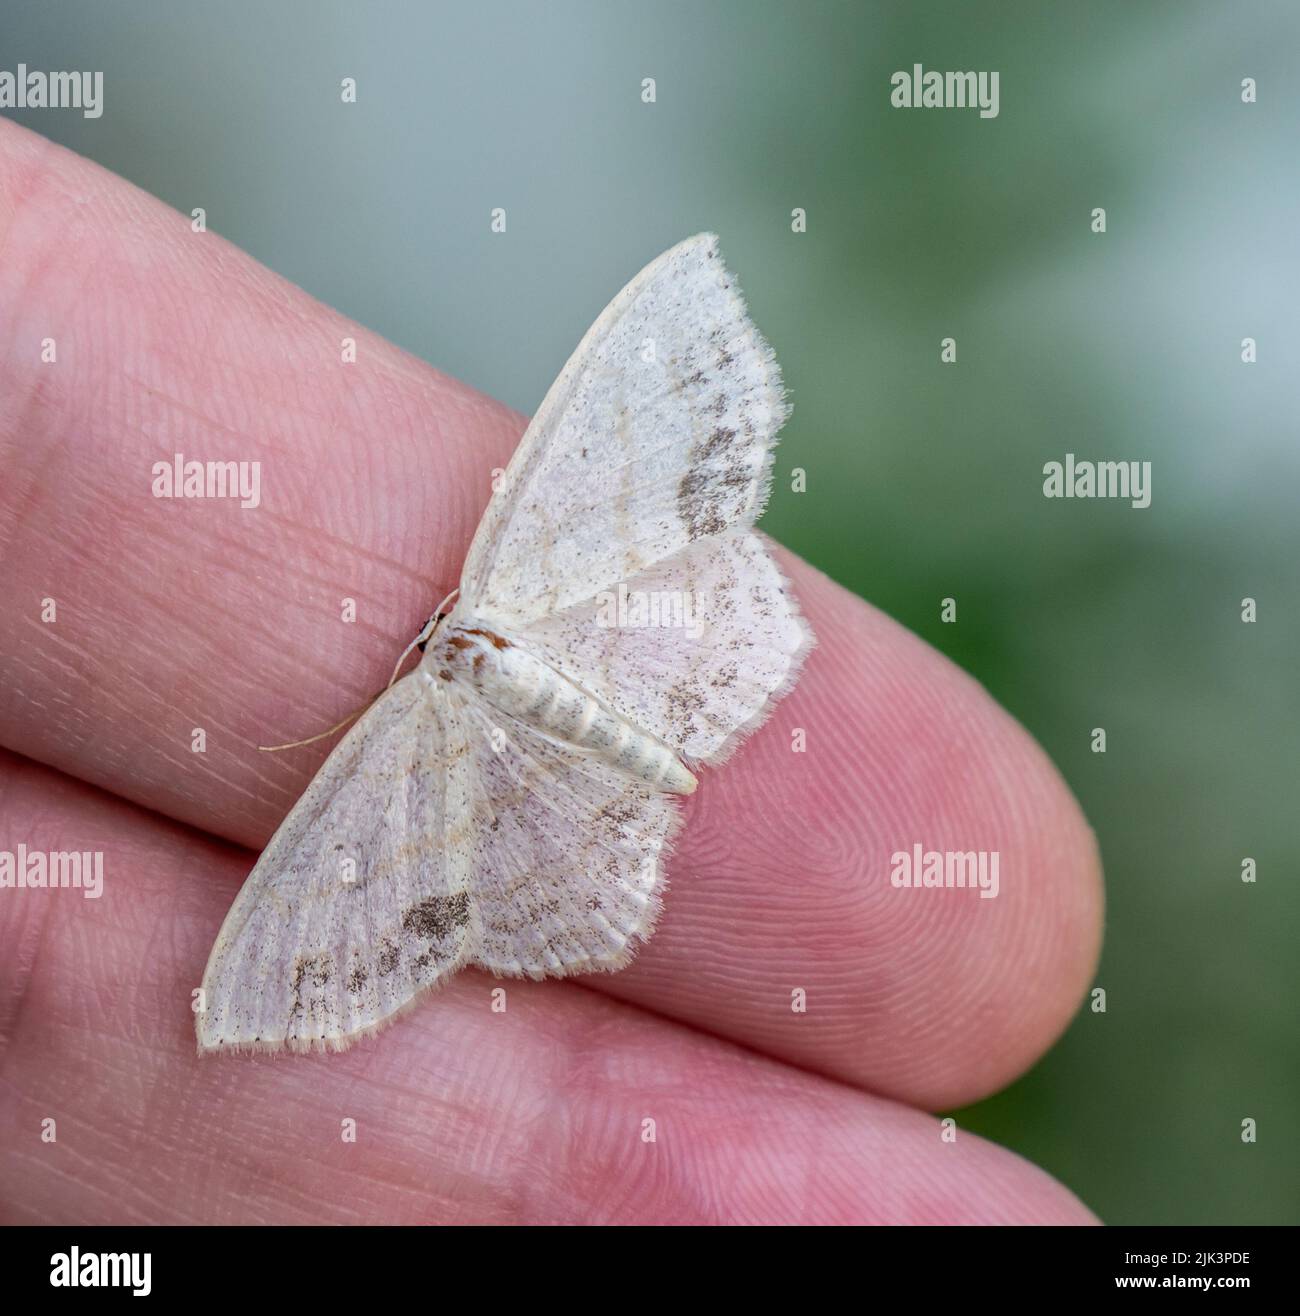 Nahaufnahme einer winzigen weißen Motte, die auf einer menschlichen Hand mit verschwommenem Hintergrund liegt Stockfoto